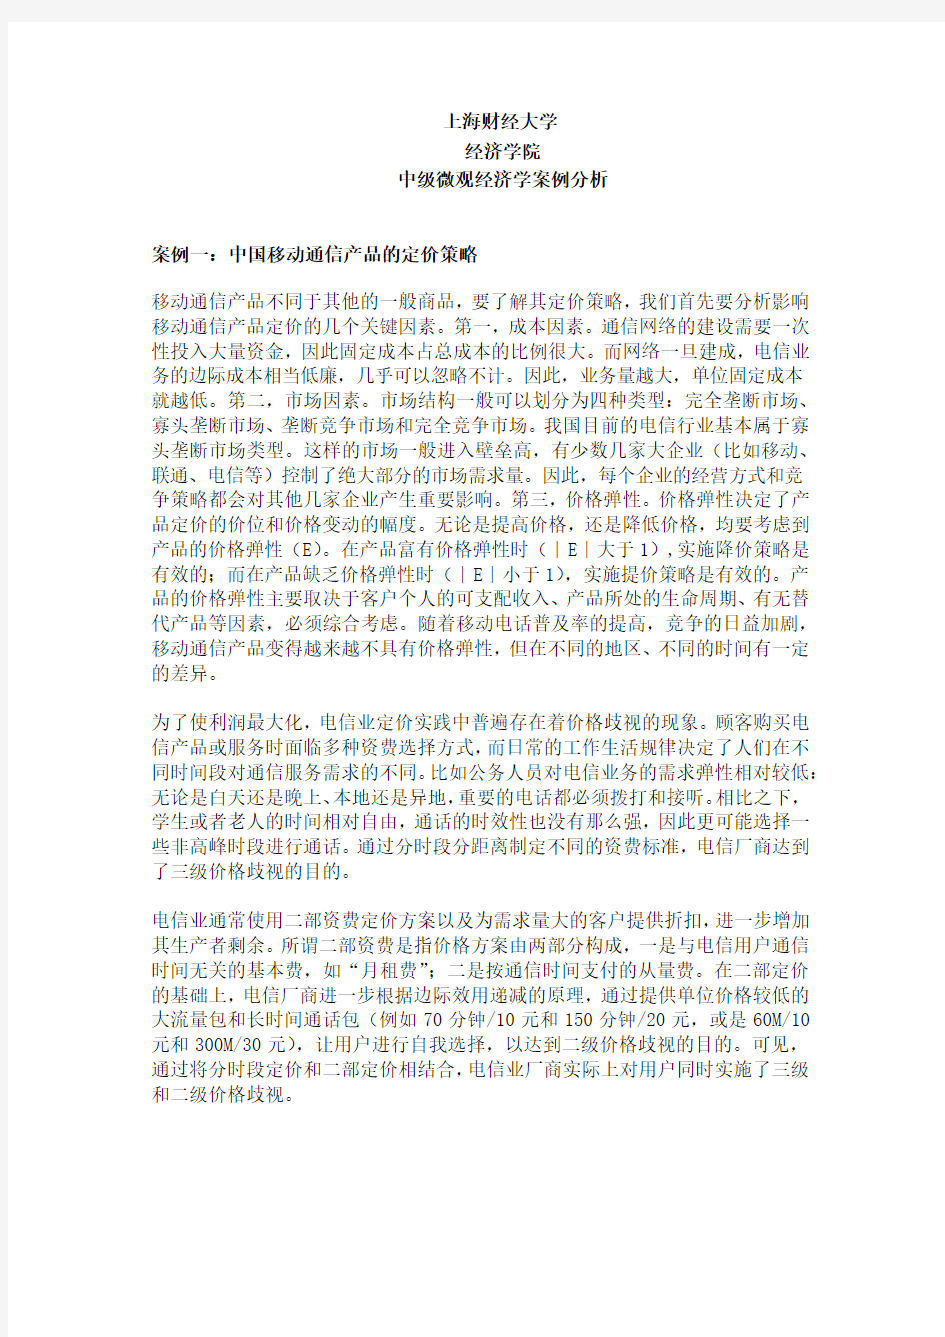 上海财经大学经济学院中级微观经济学案例分析案例一：中国移动通信